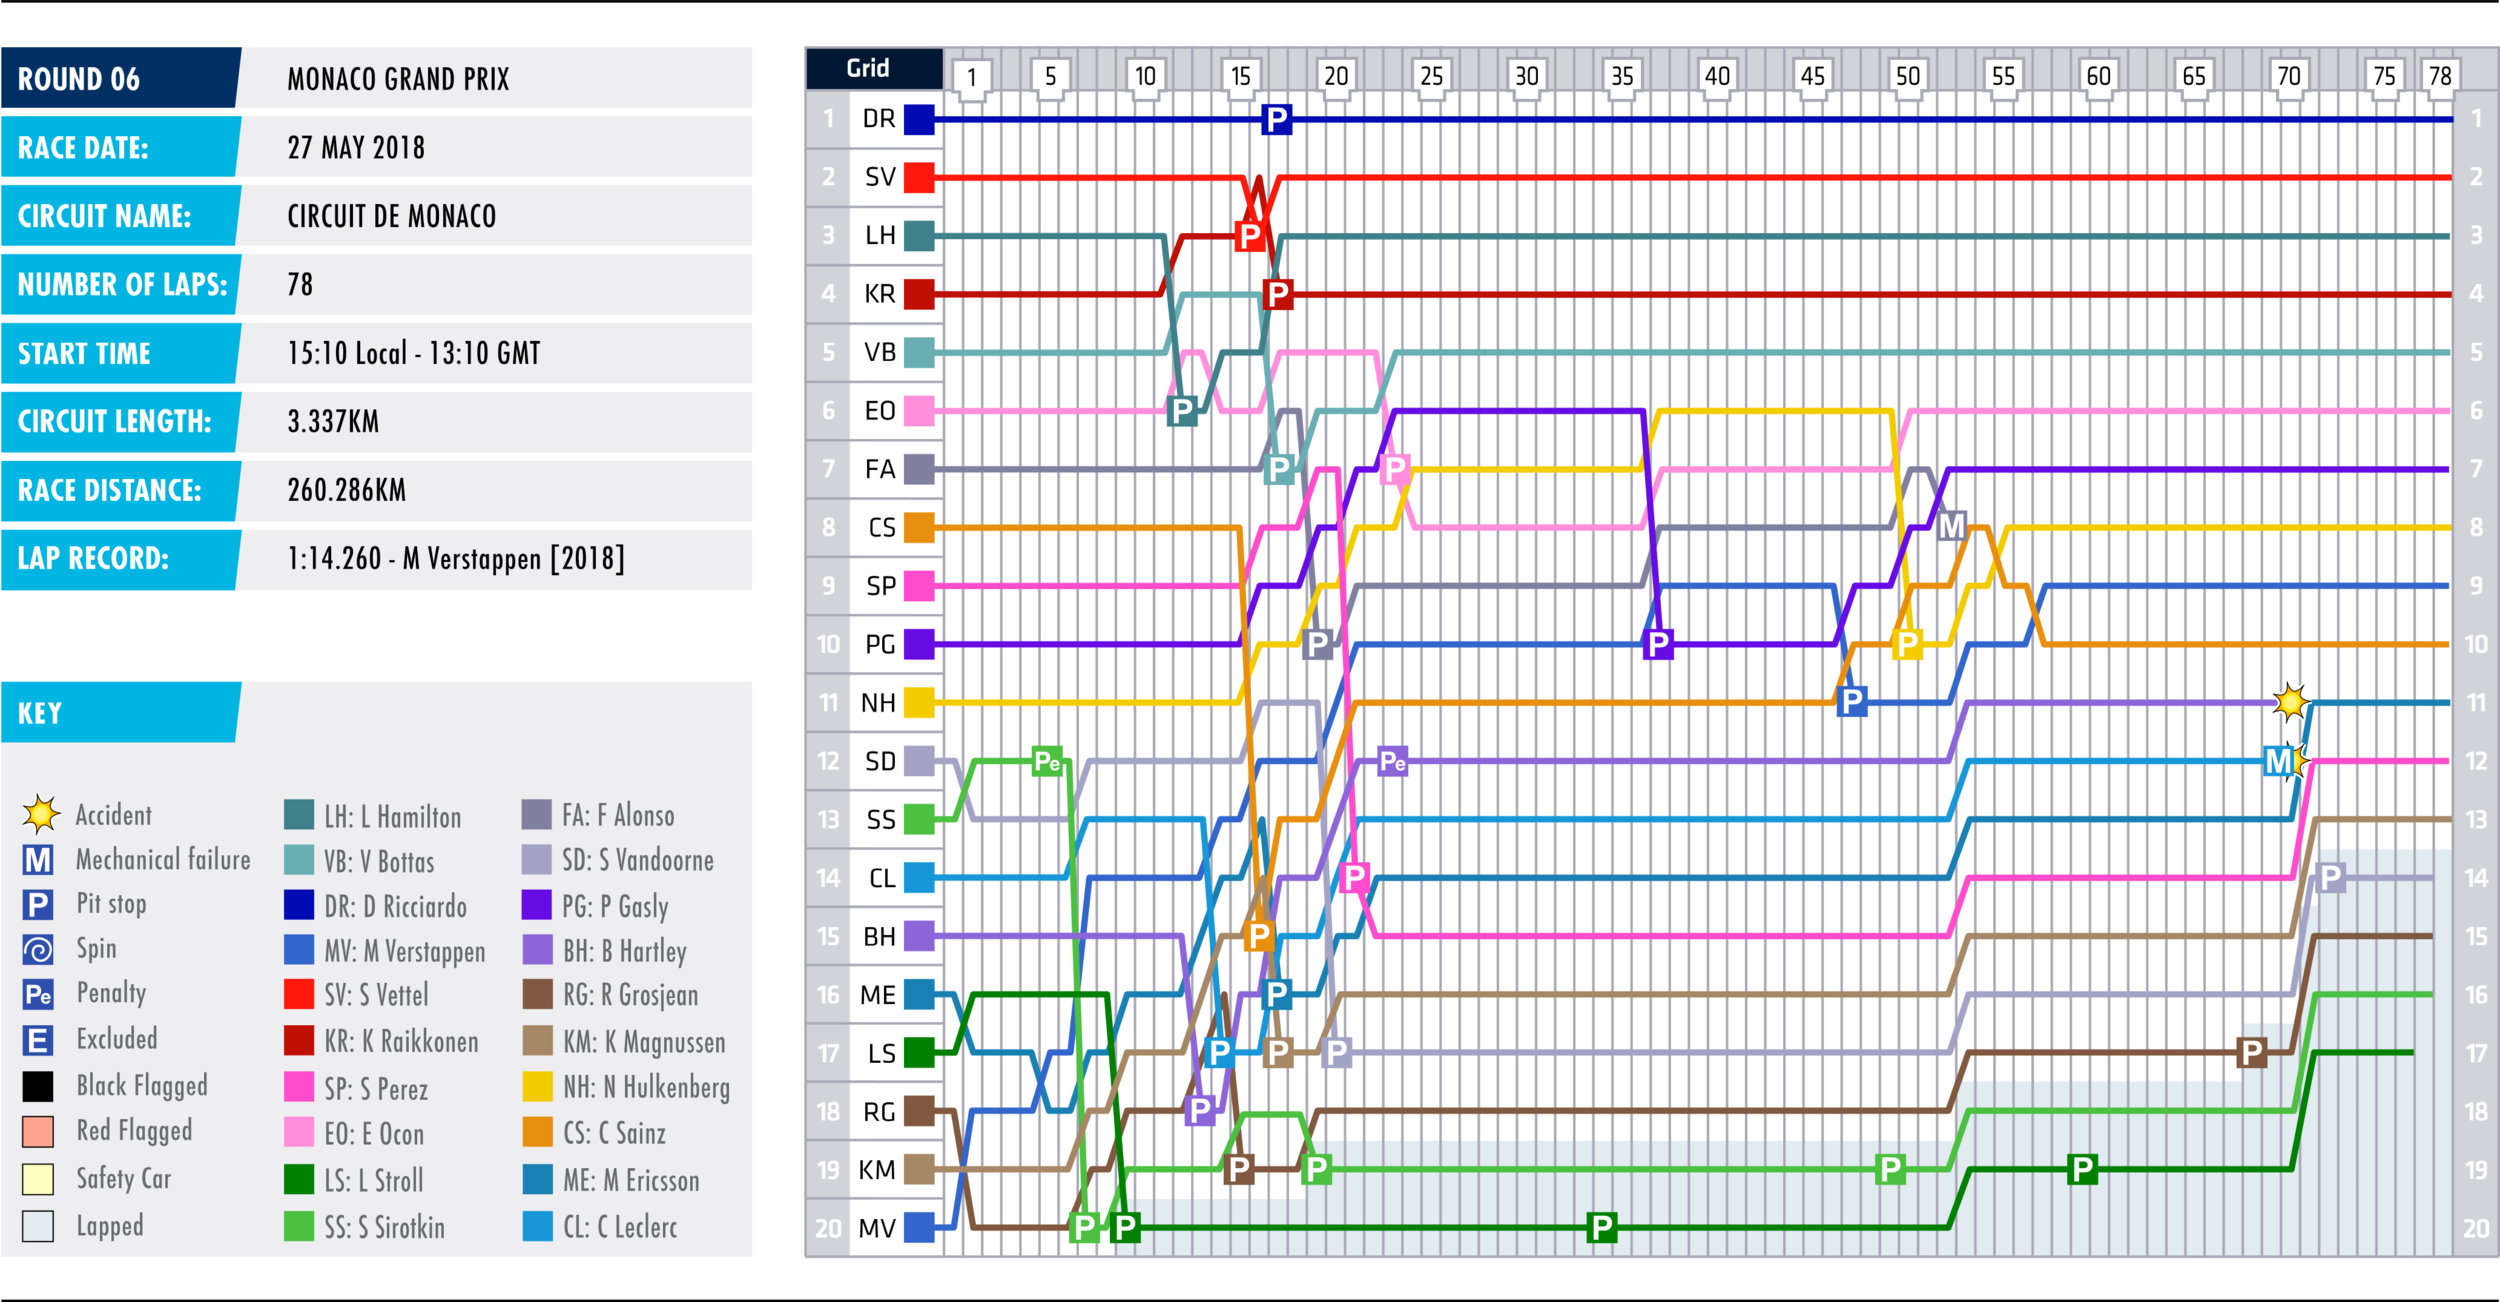  Lap Chart by FIA 